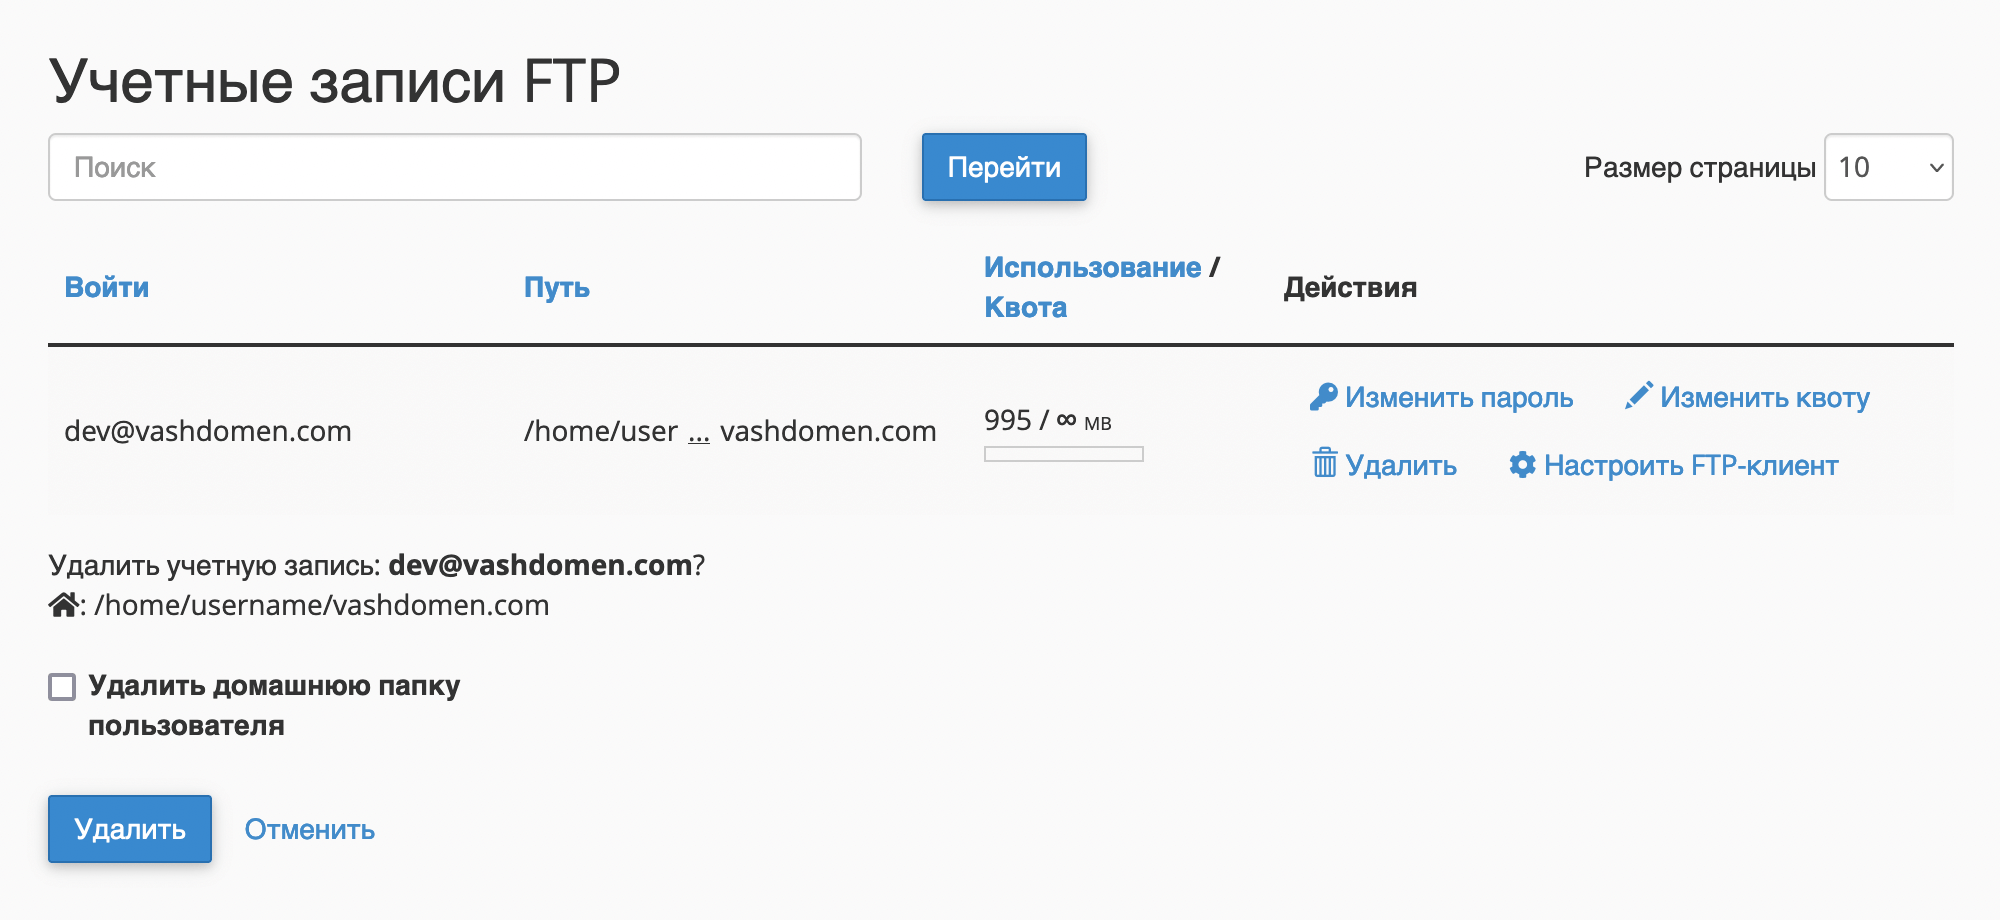 Как удалить FTP-аккаунт в cPanel